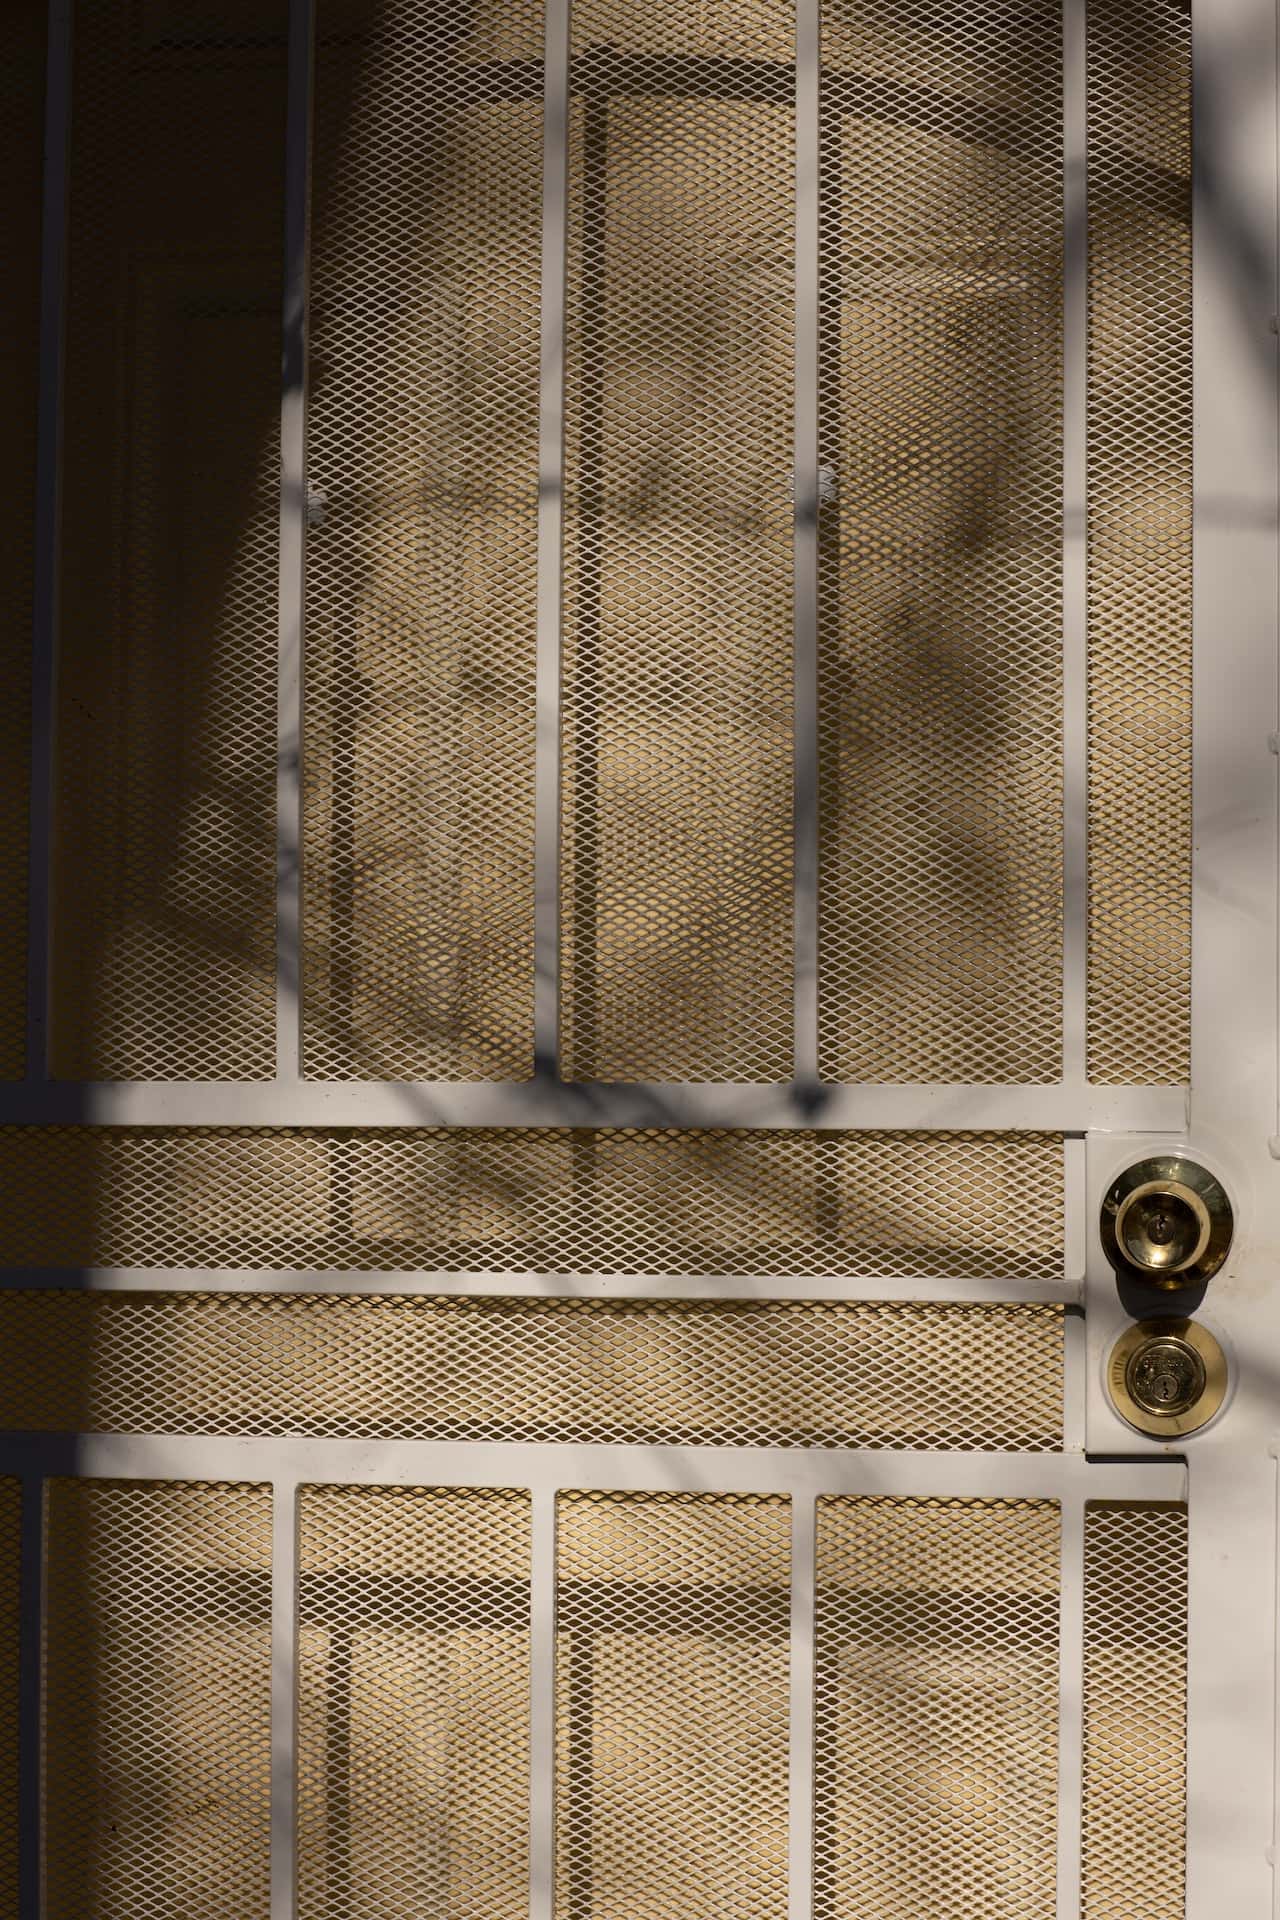 metal door with wire mesh